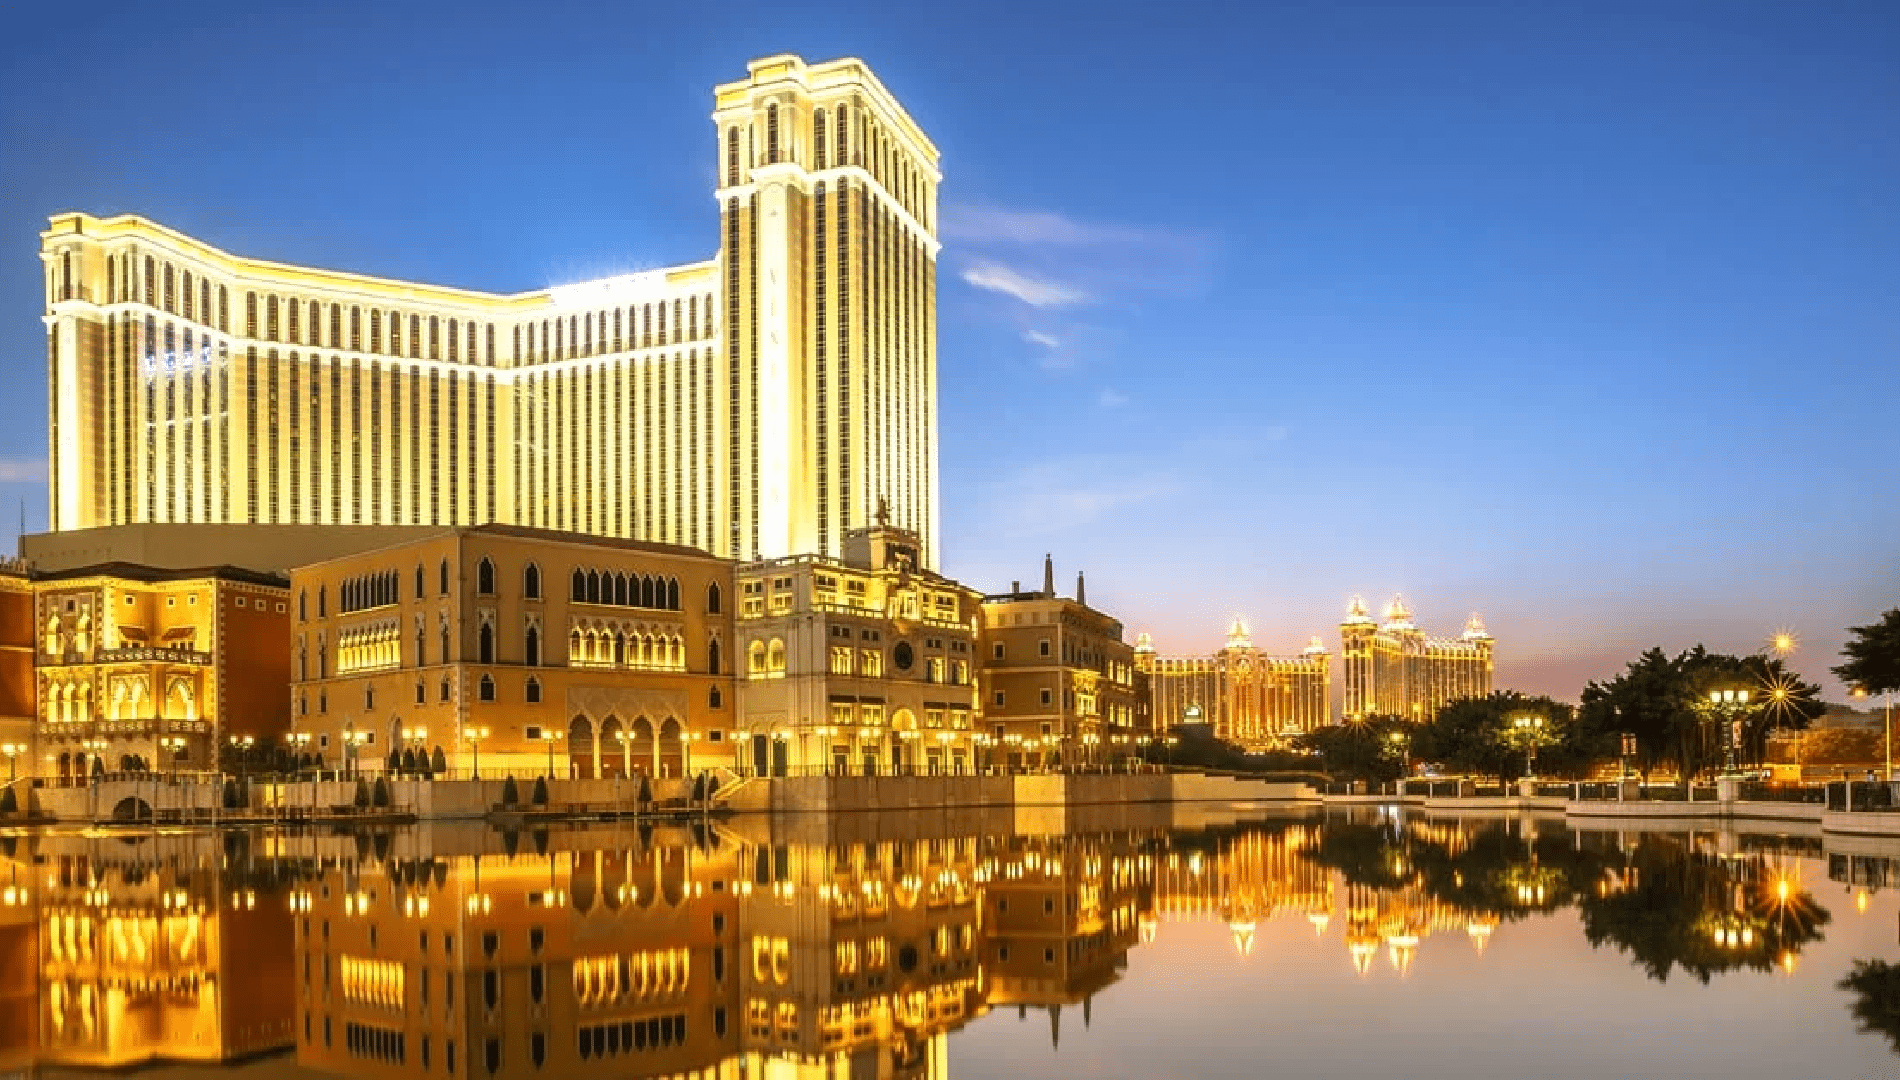 Sands Leads 2023 Macau GGR Share, MGM, Wynn Gain